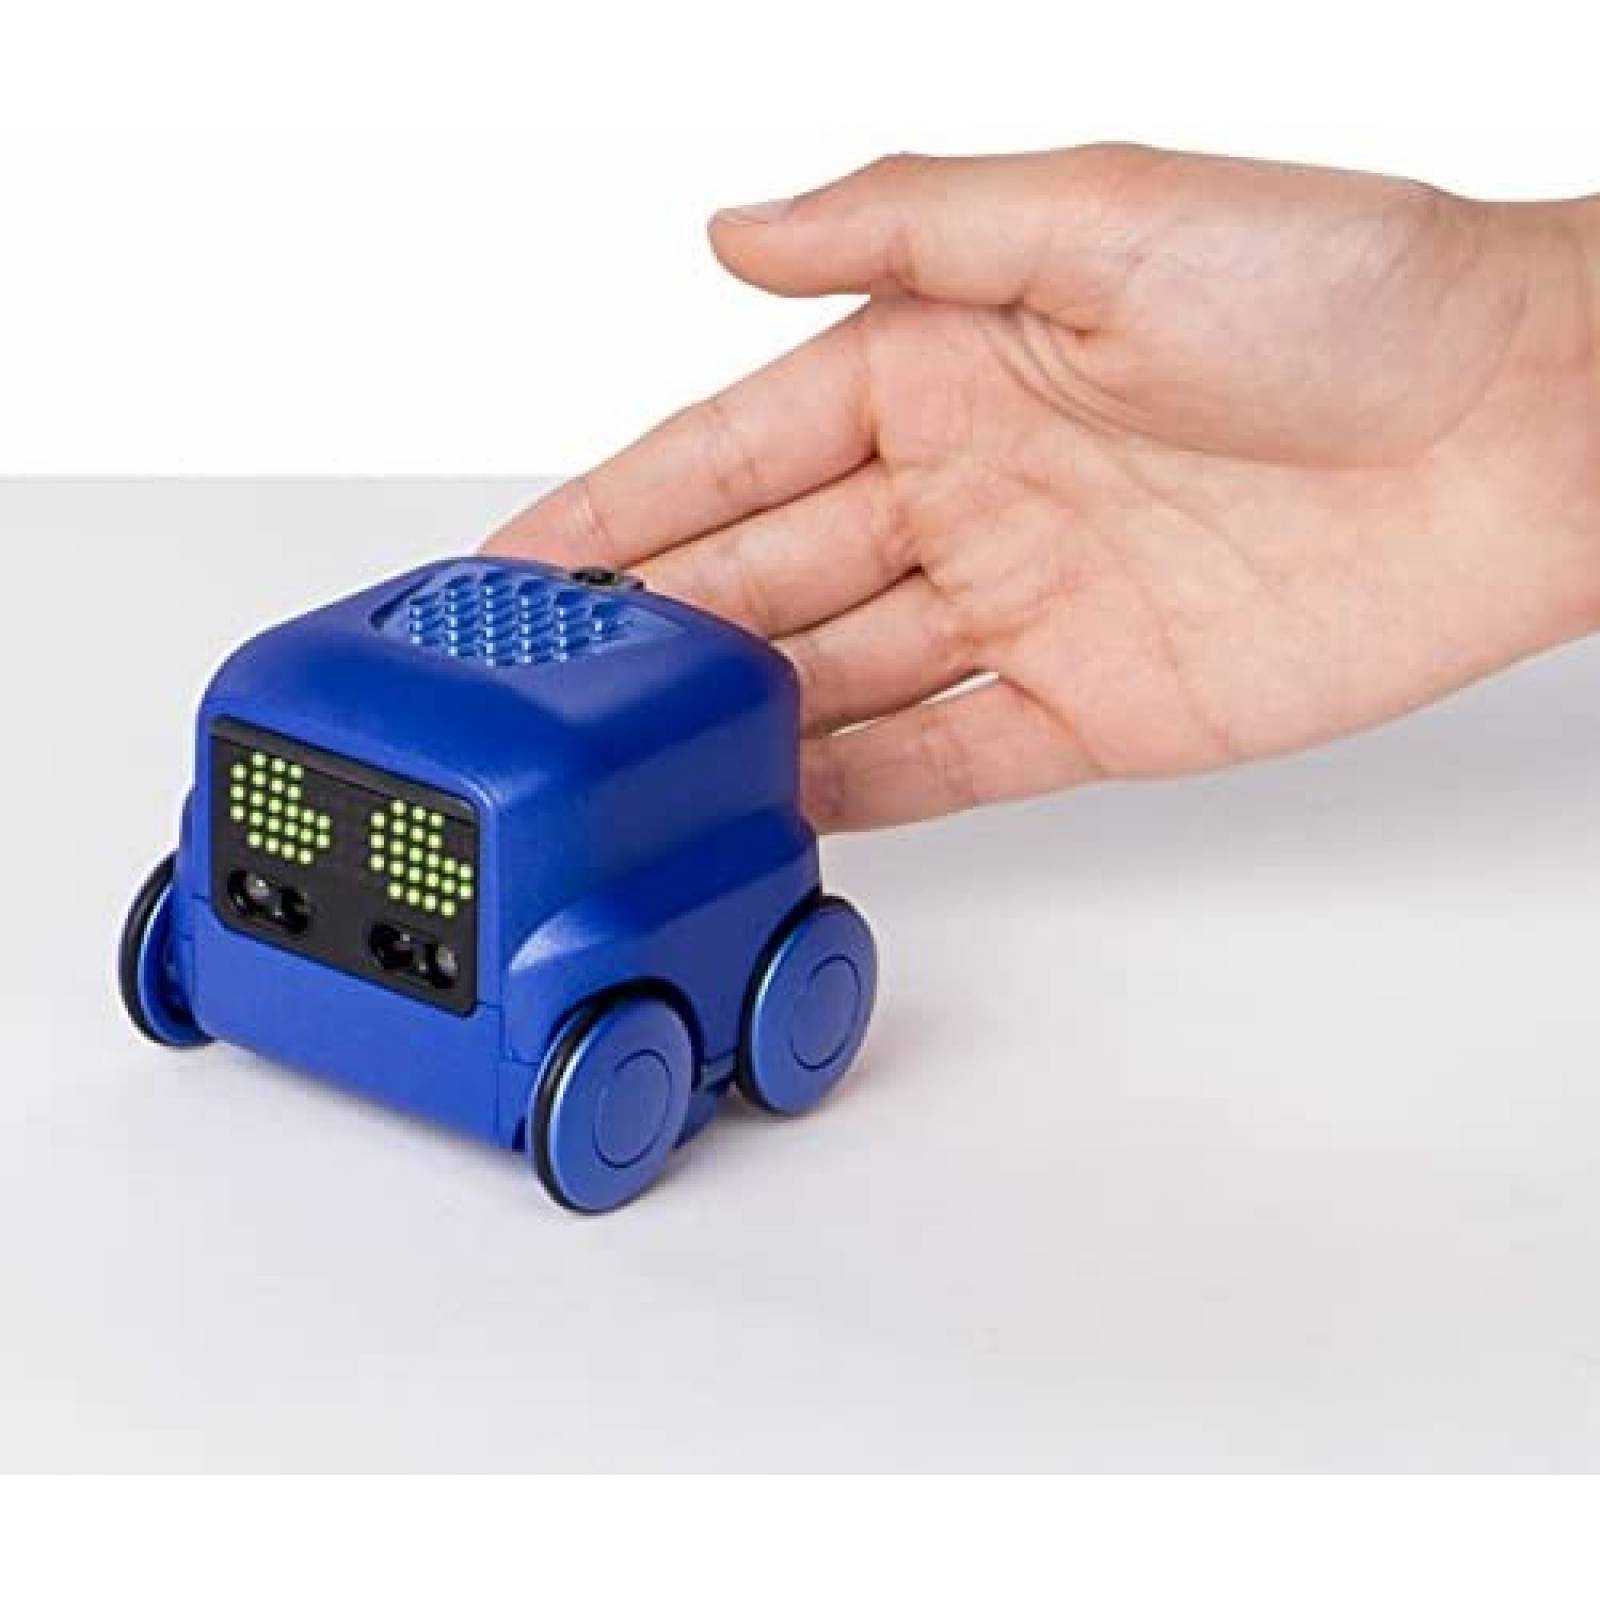 Robot de Juguete Boxer con Control Remoto Interactivo -Azul